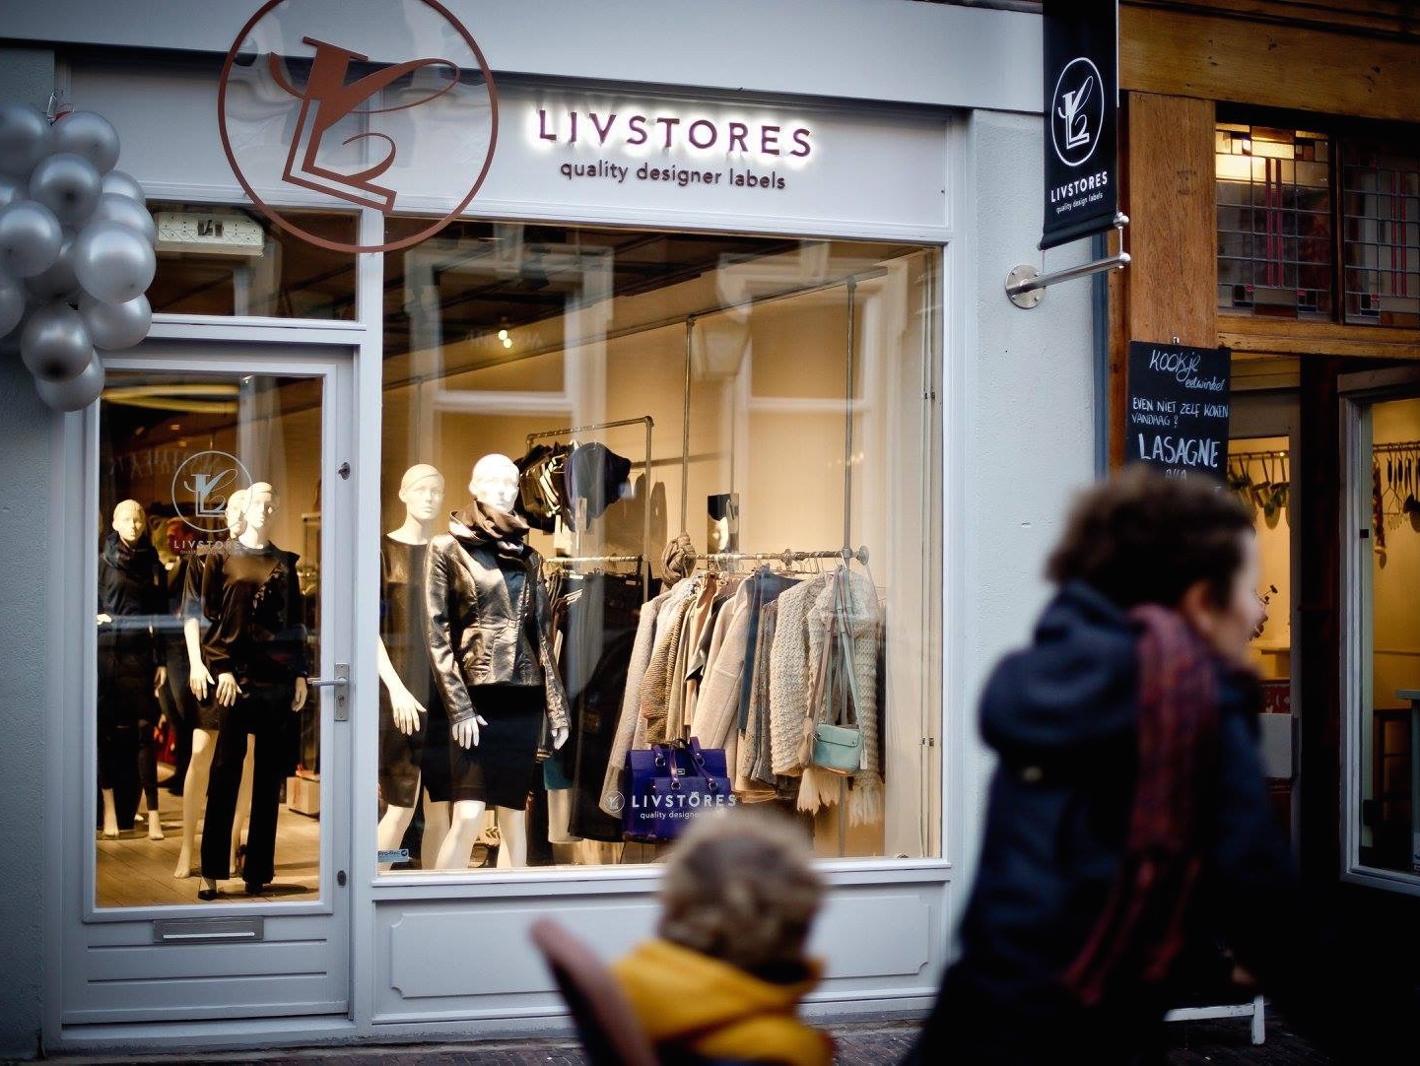 Foto LIVStores in Utrecht, Einkaufen, Spaß beim Einkaufen - #1